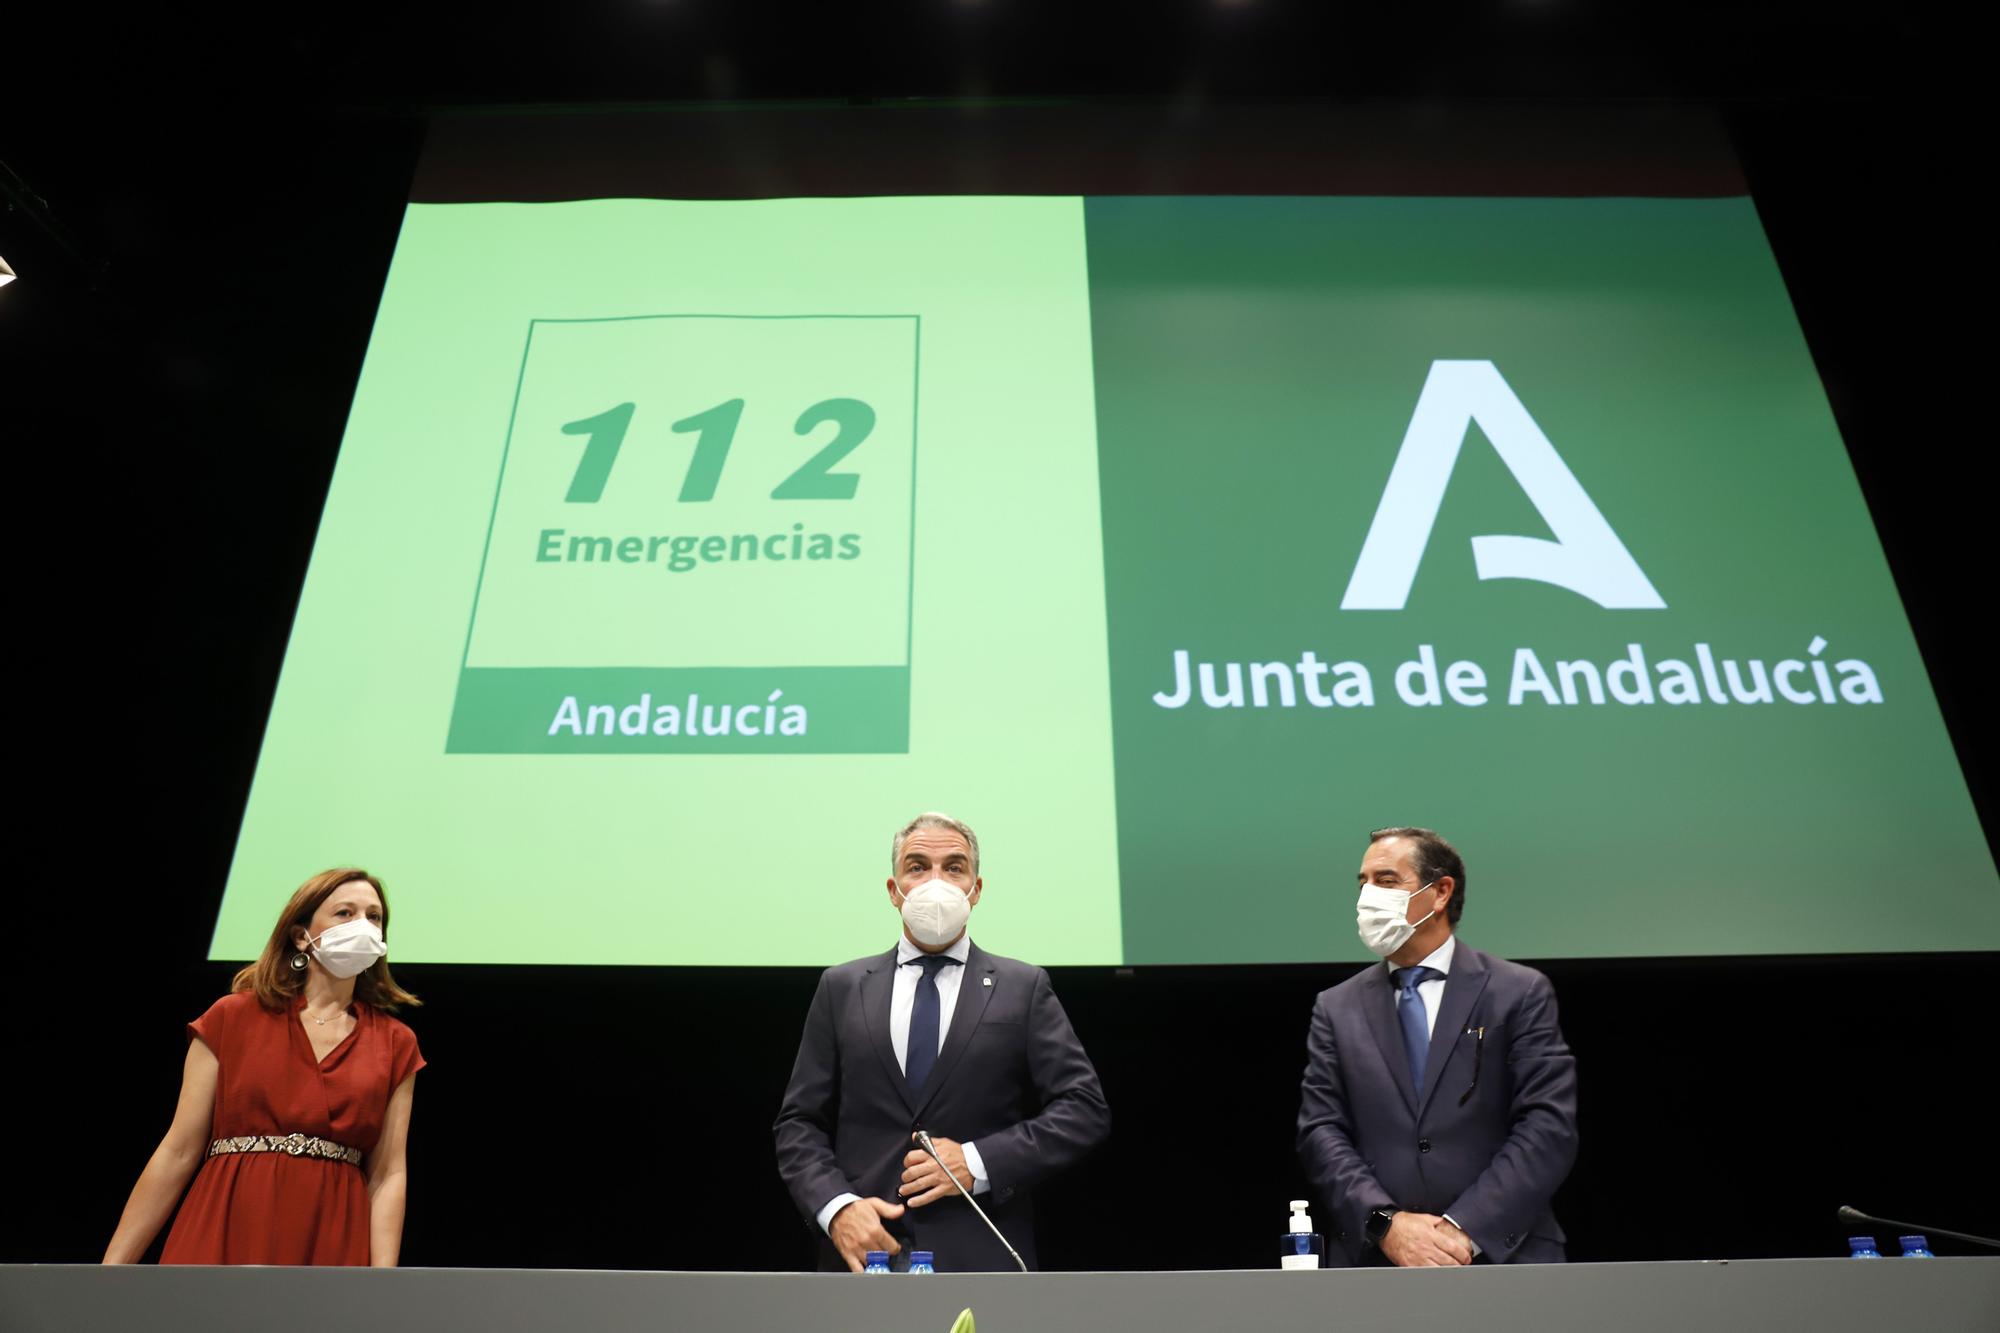 Gala del XX Aniversario del Servicio de Emergencias 112 en Andalucía